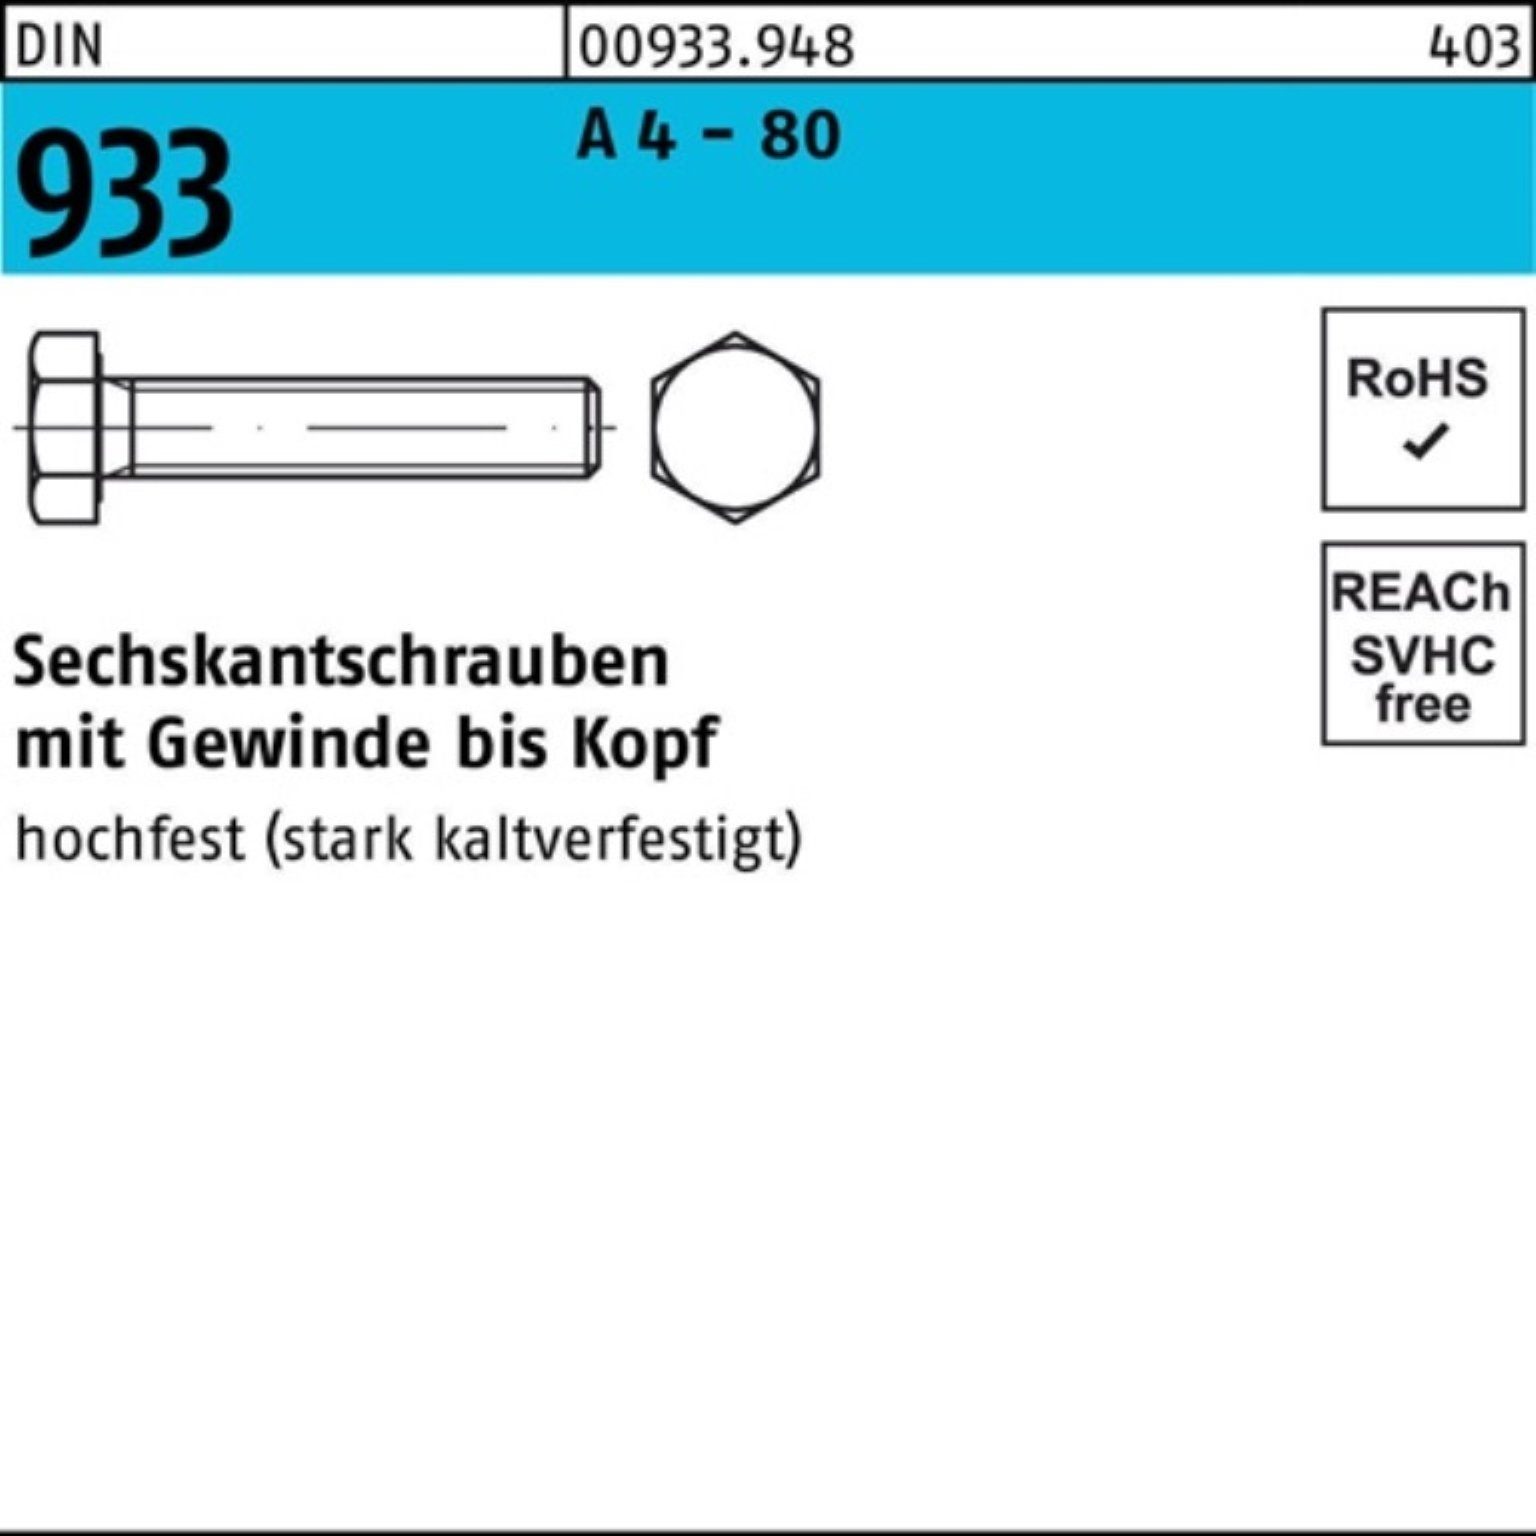 Reyher Sechskantschraube DIN Sechskantschraube - 933 A 1 VG M12x 4 DIN Stück Pack 200 80 100er